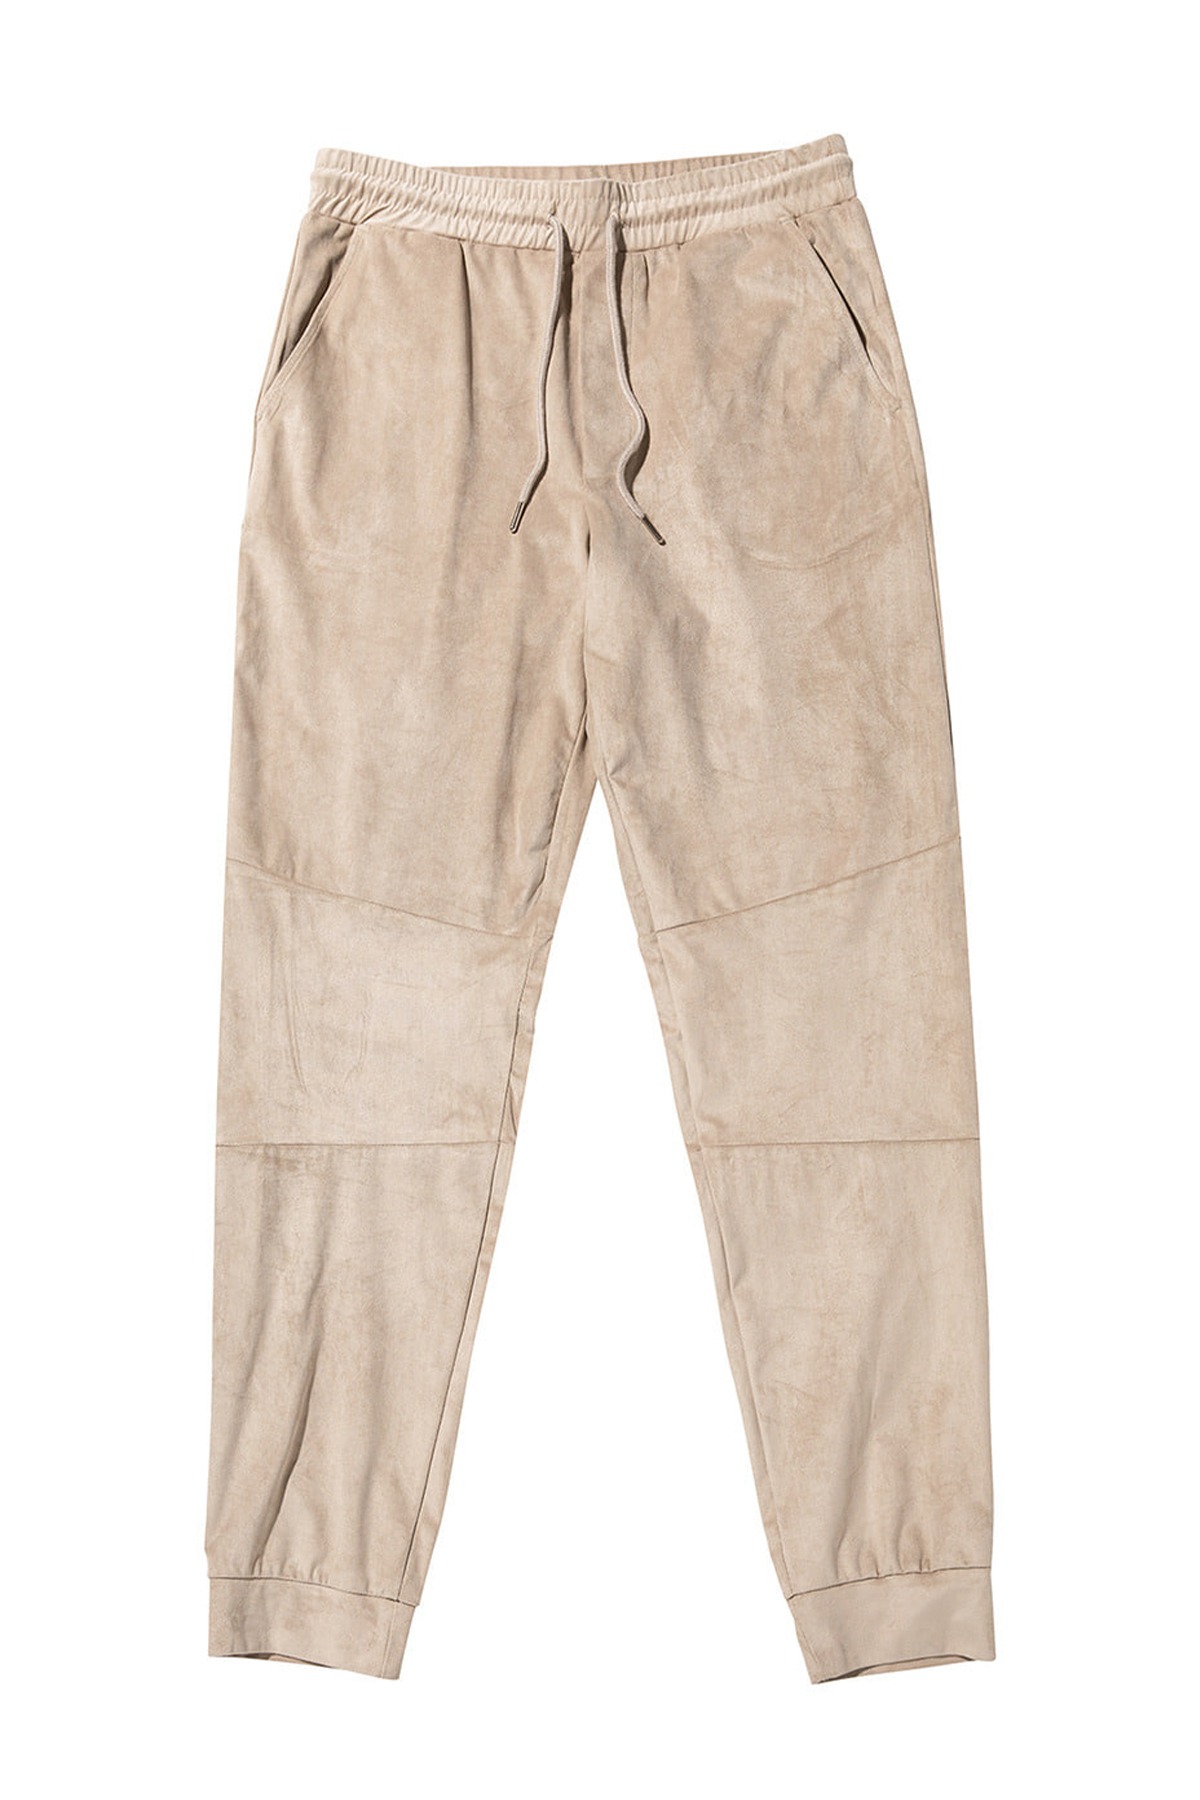 #jp05 Suede loose fit pants (beige)